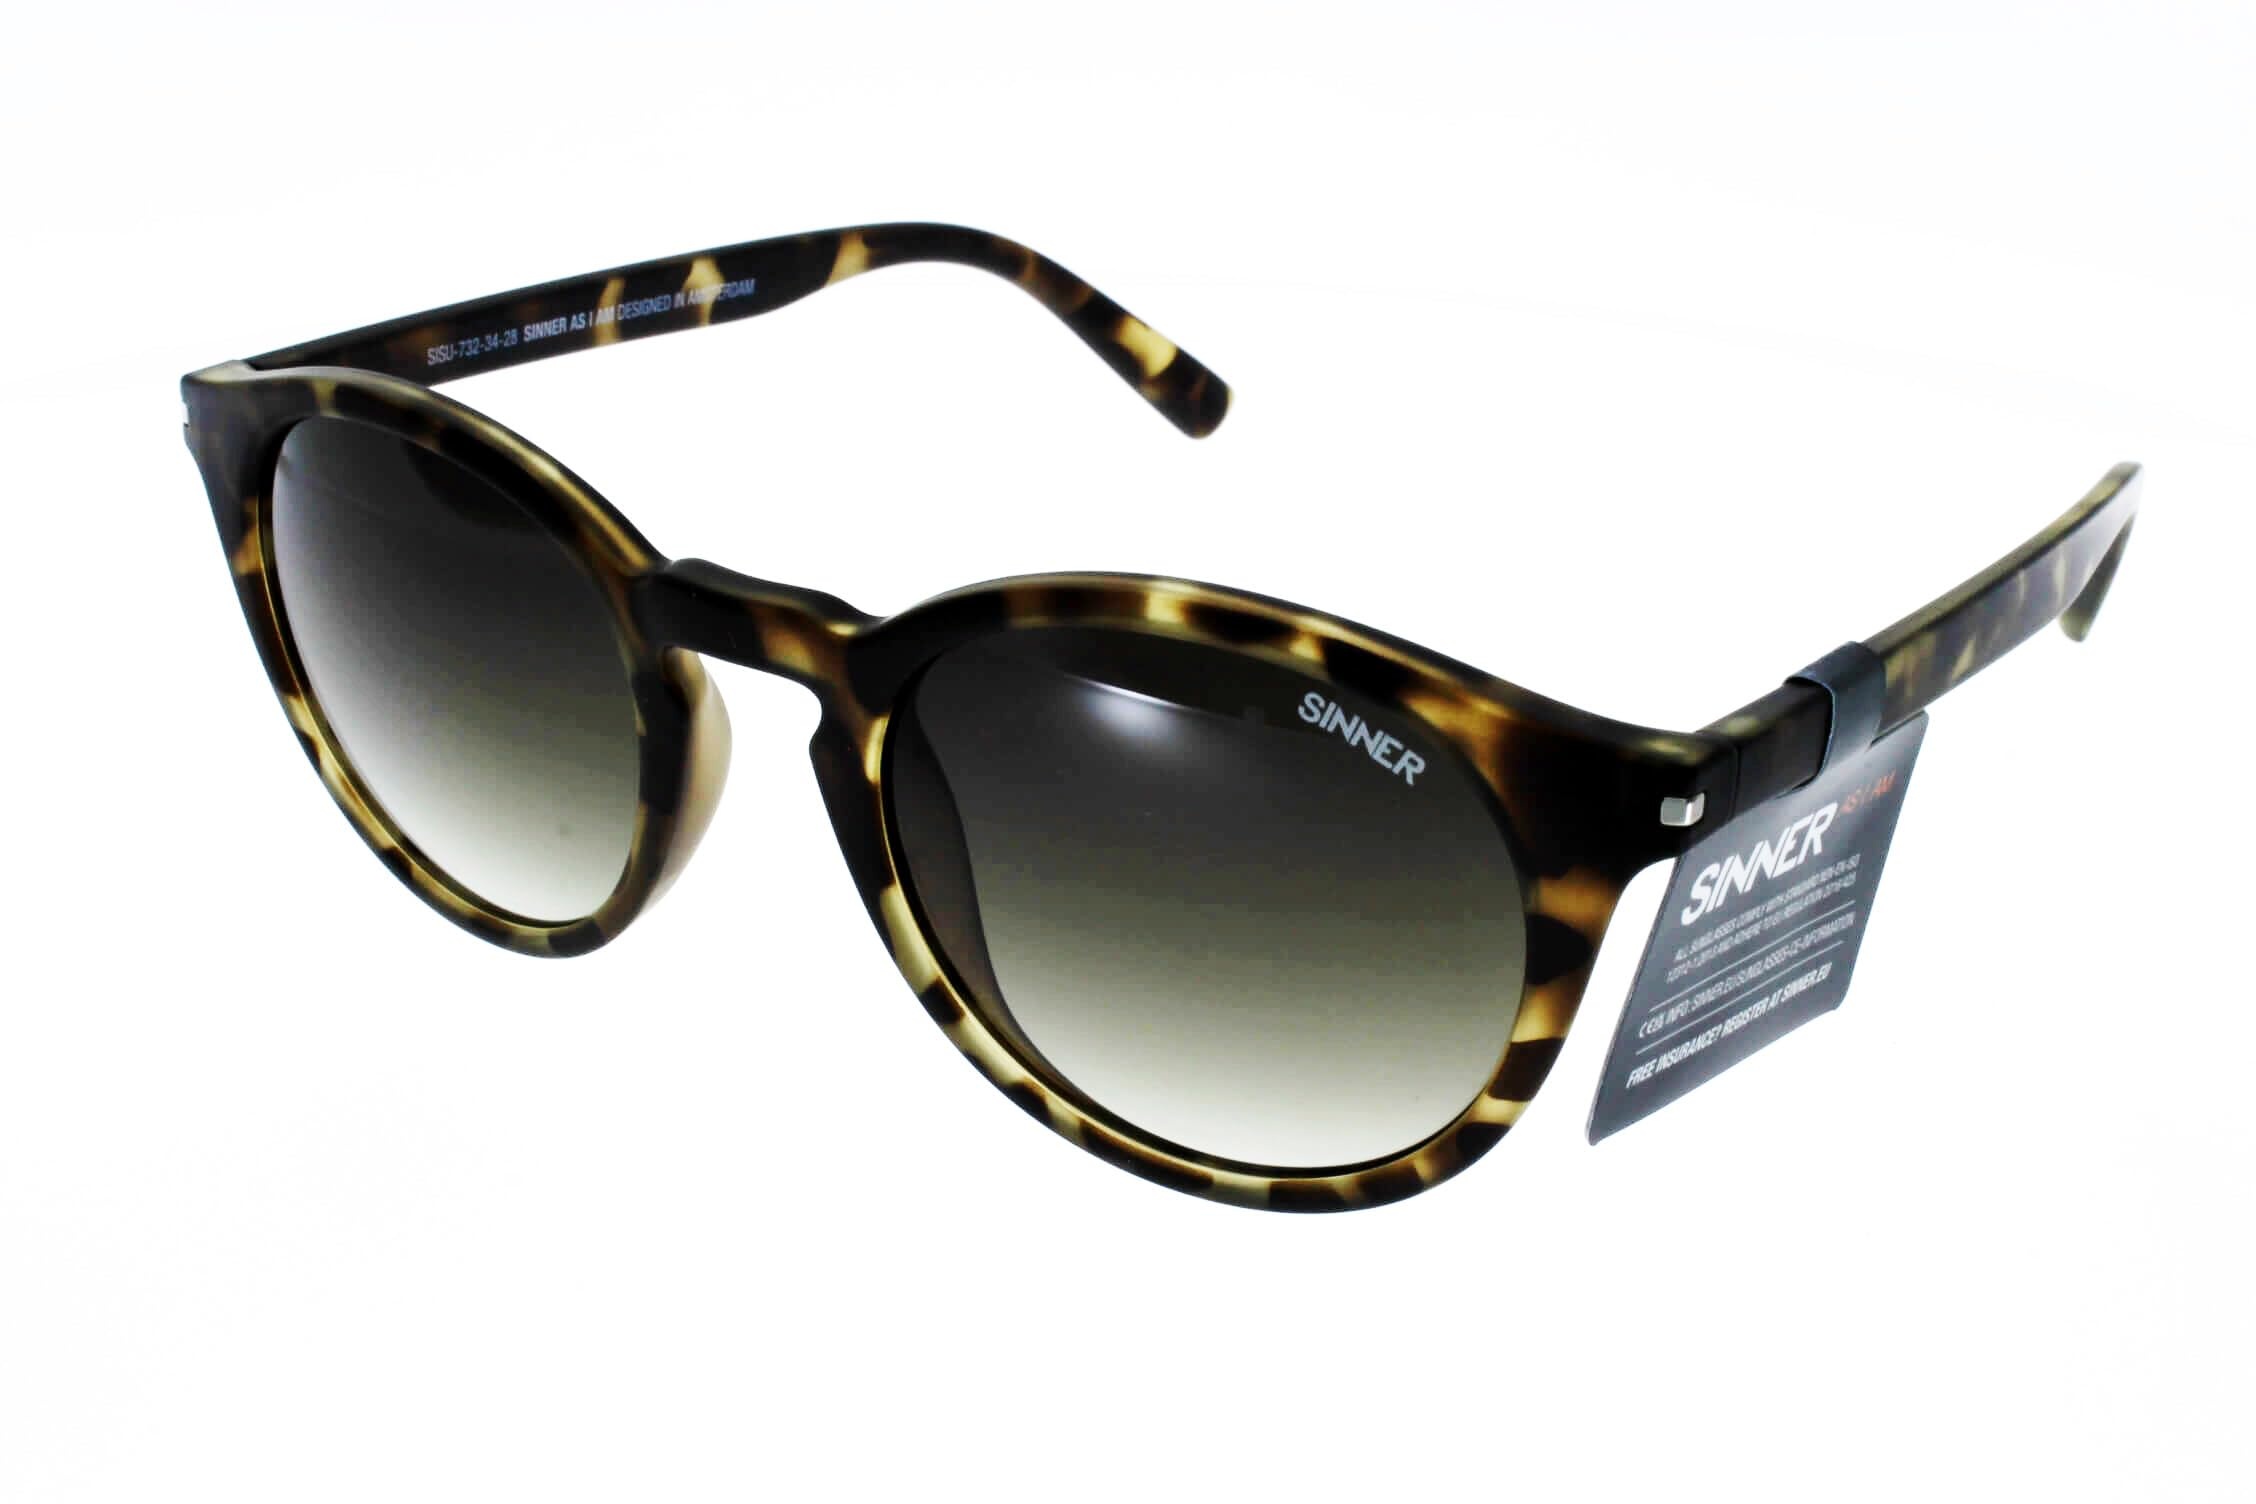 SINNER Patnem Sonnenbrille Damen – Verspiegelt – 100% UV400 Schutz – Dezenrierte Linsen – Langlebiges Material – Stylisch Design – Mehrere Farben – Sonnenbrille Damen Verspiegelt